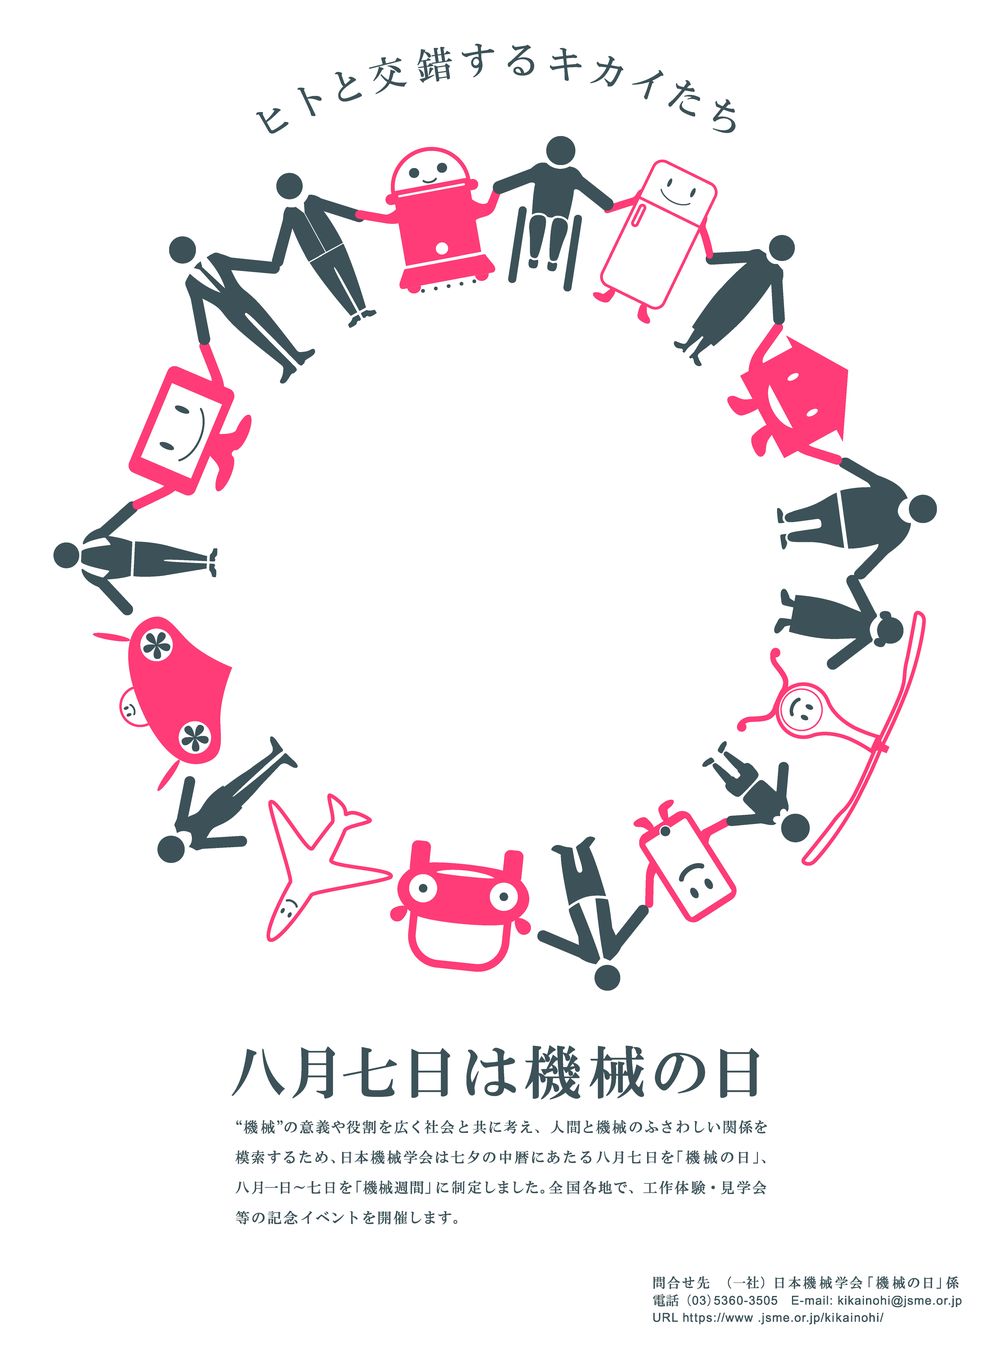 機械の日 機械週間 一般社団法人 日本機械学会